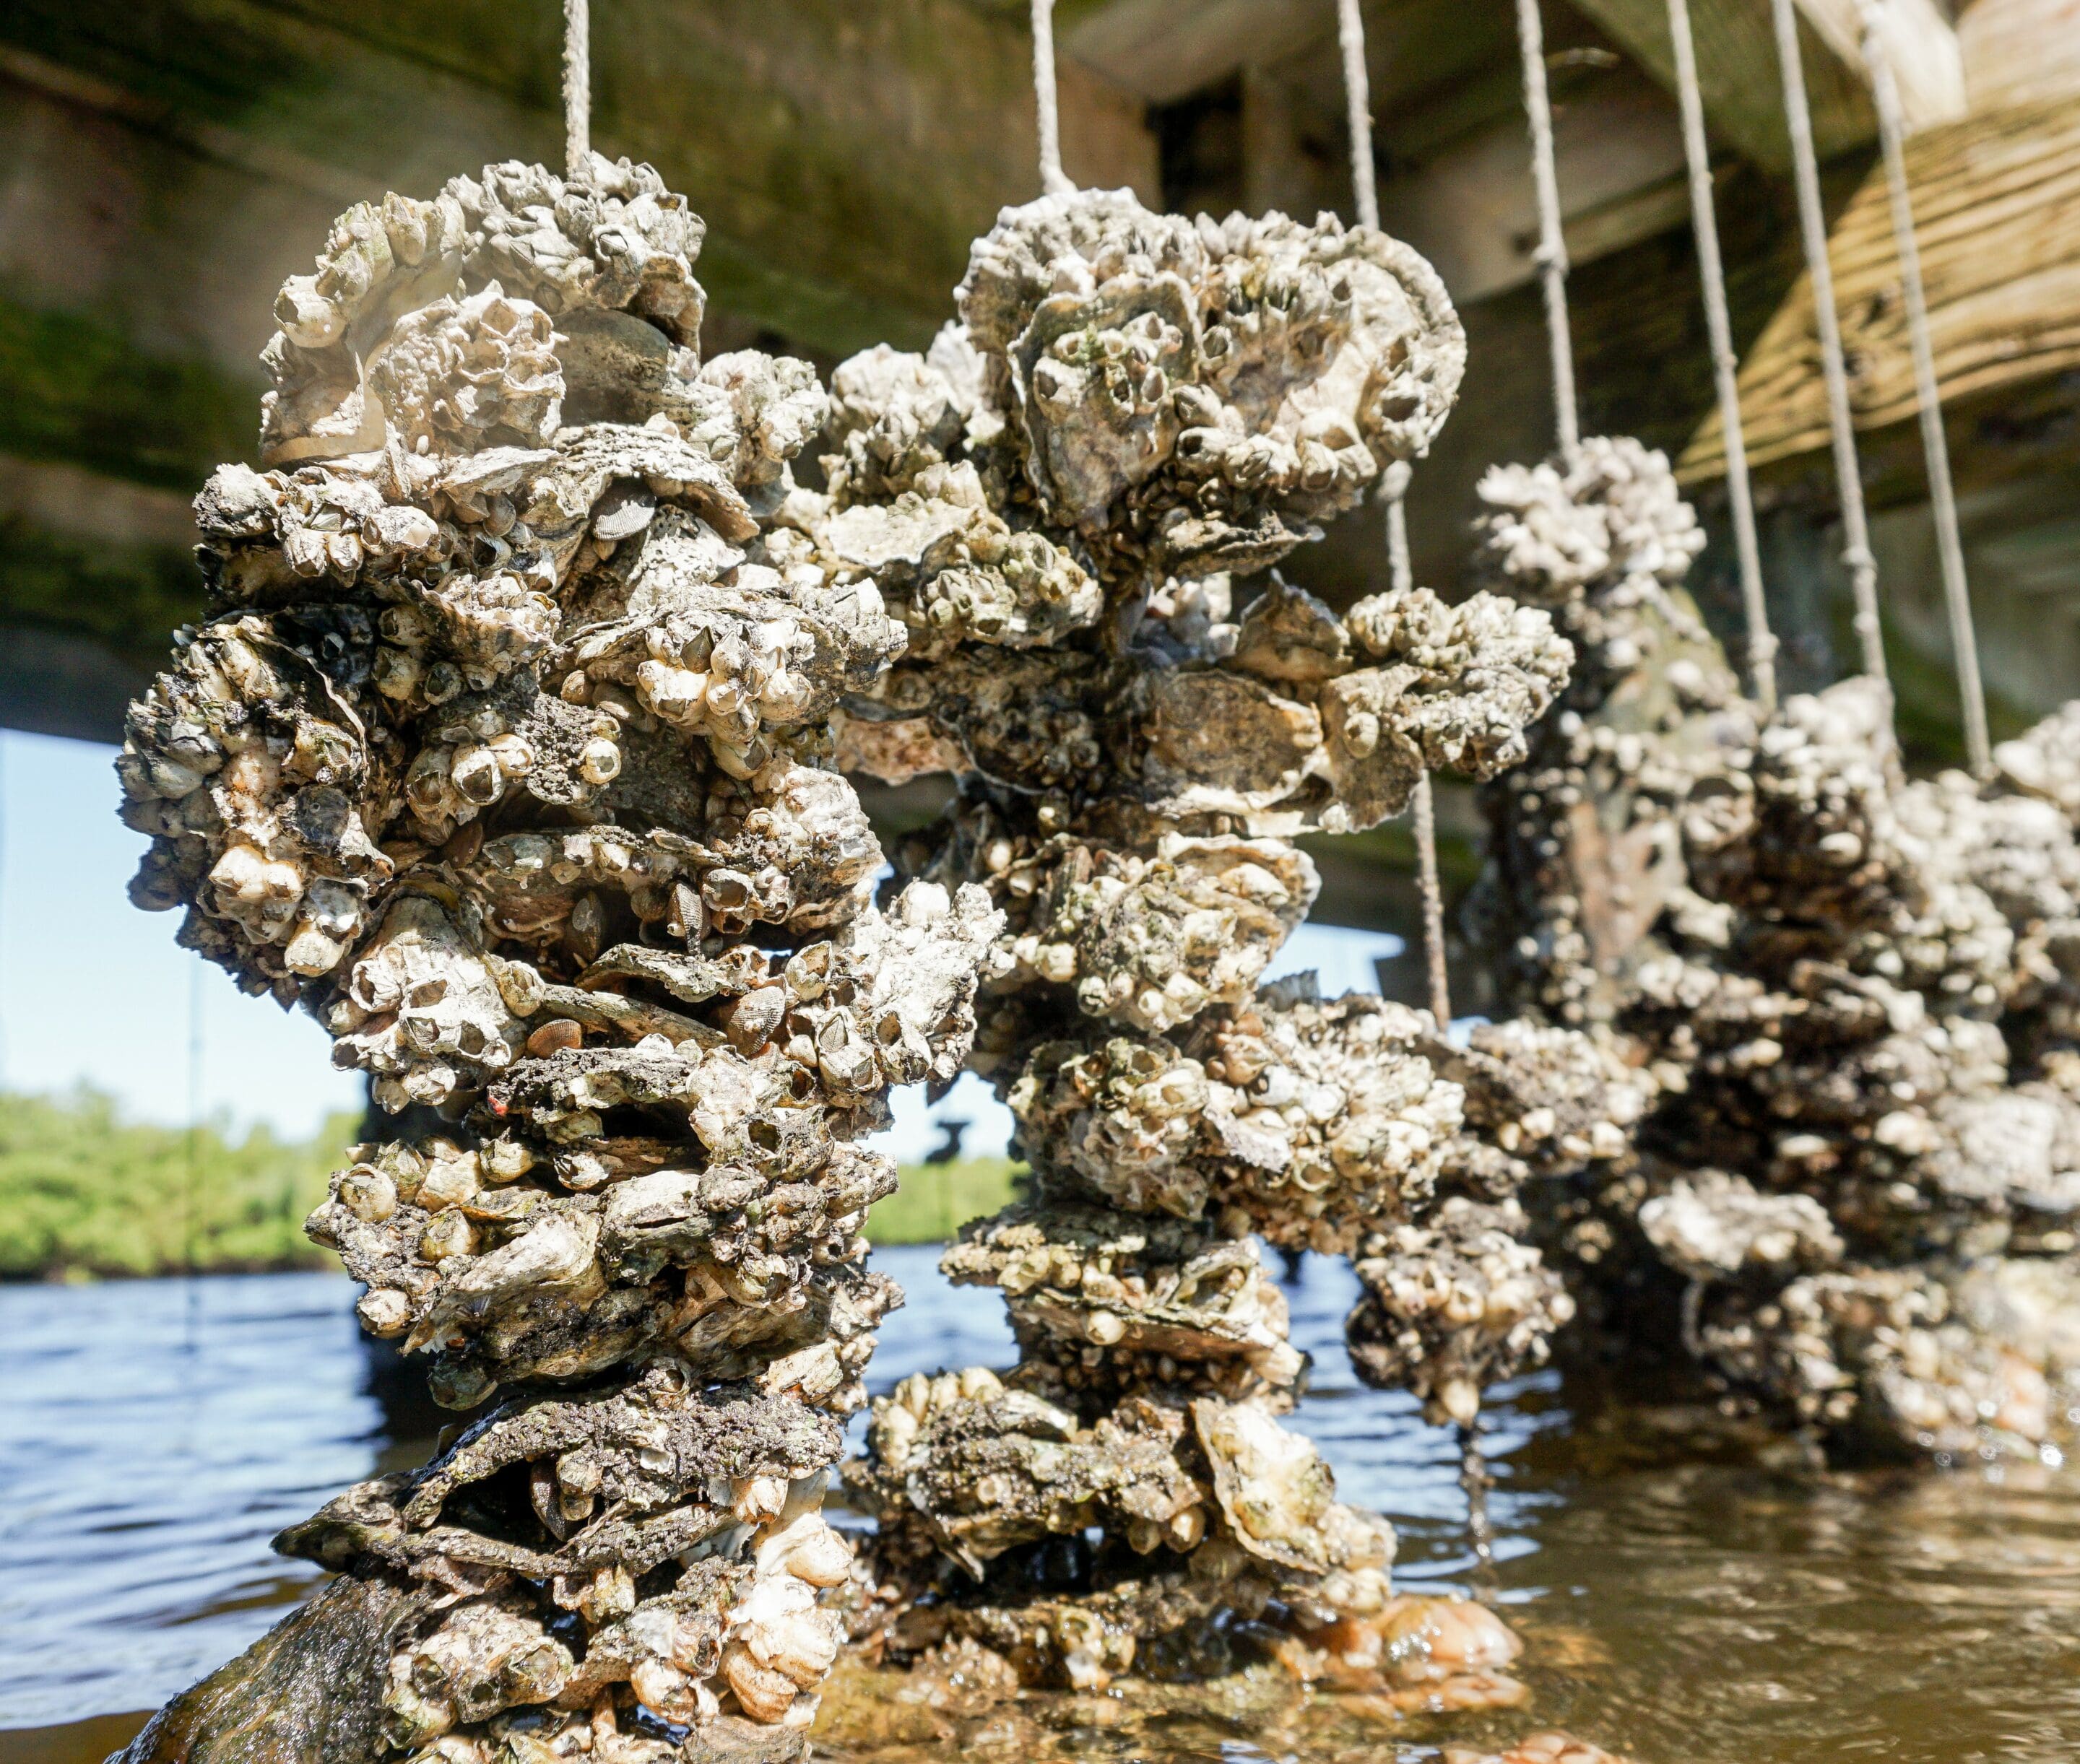 vertical oyster gardens hang rom a dock